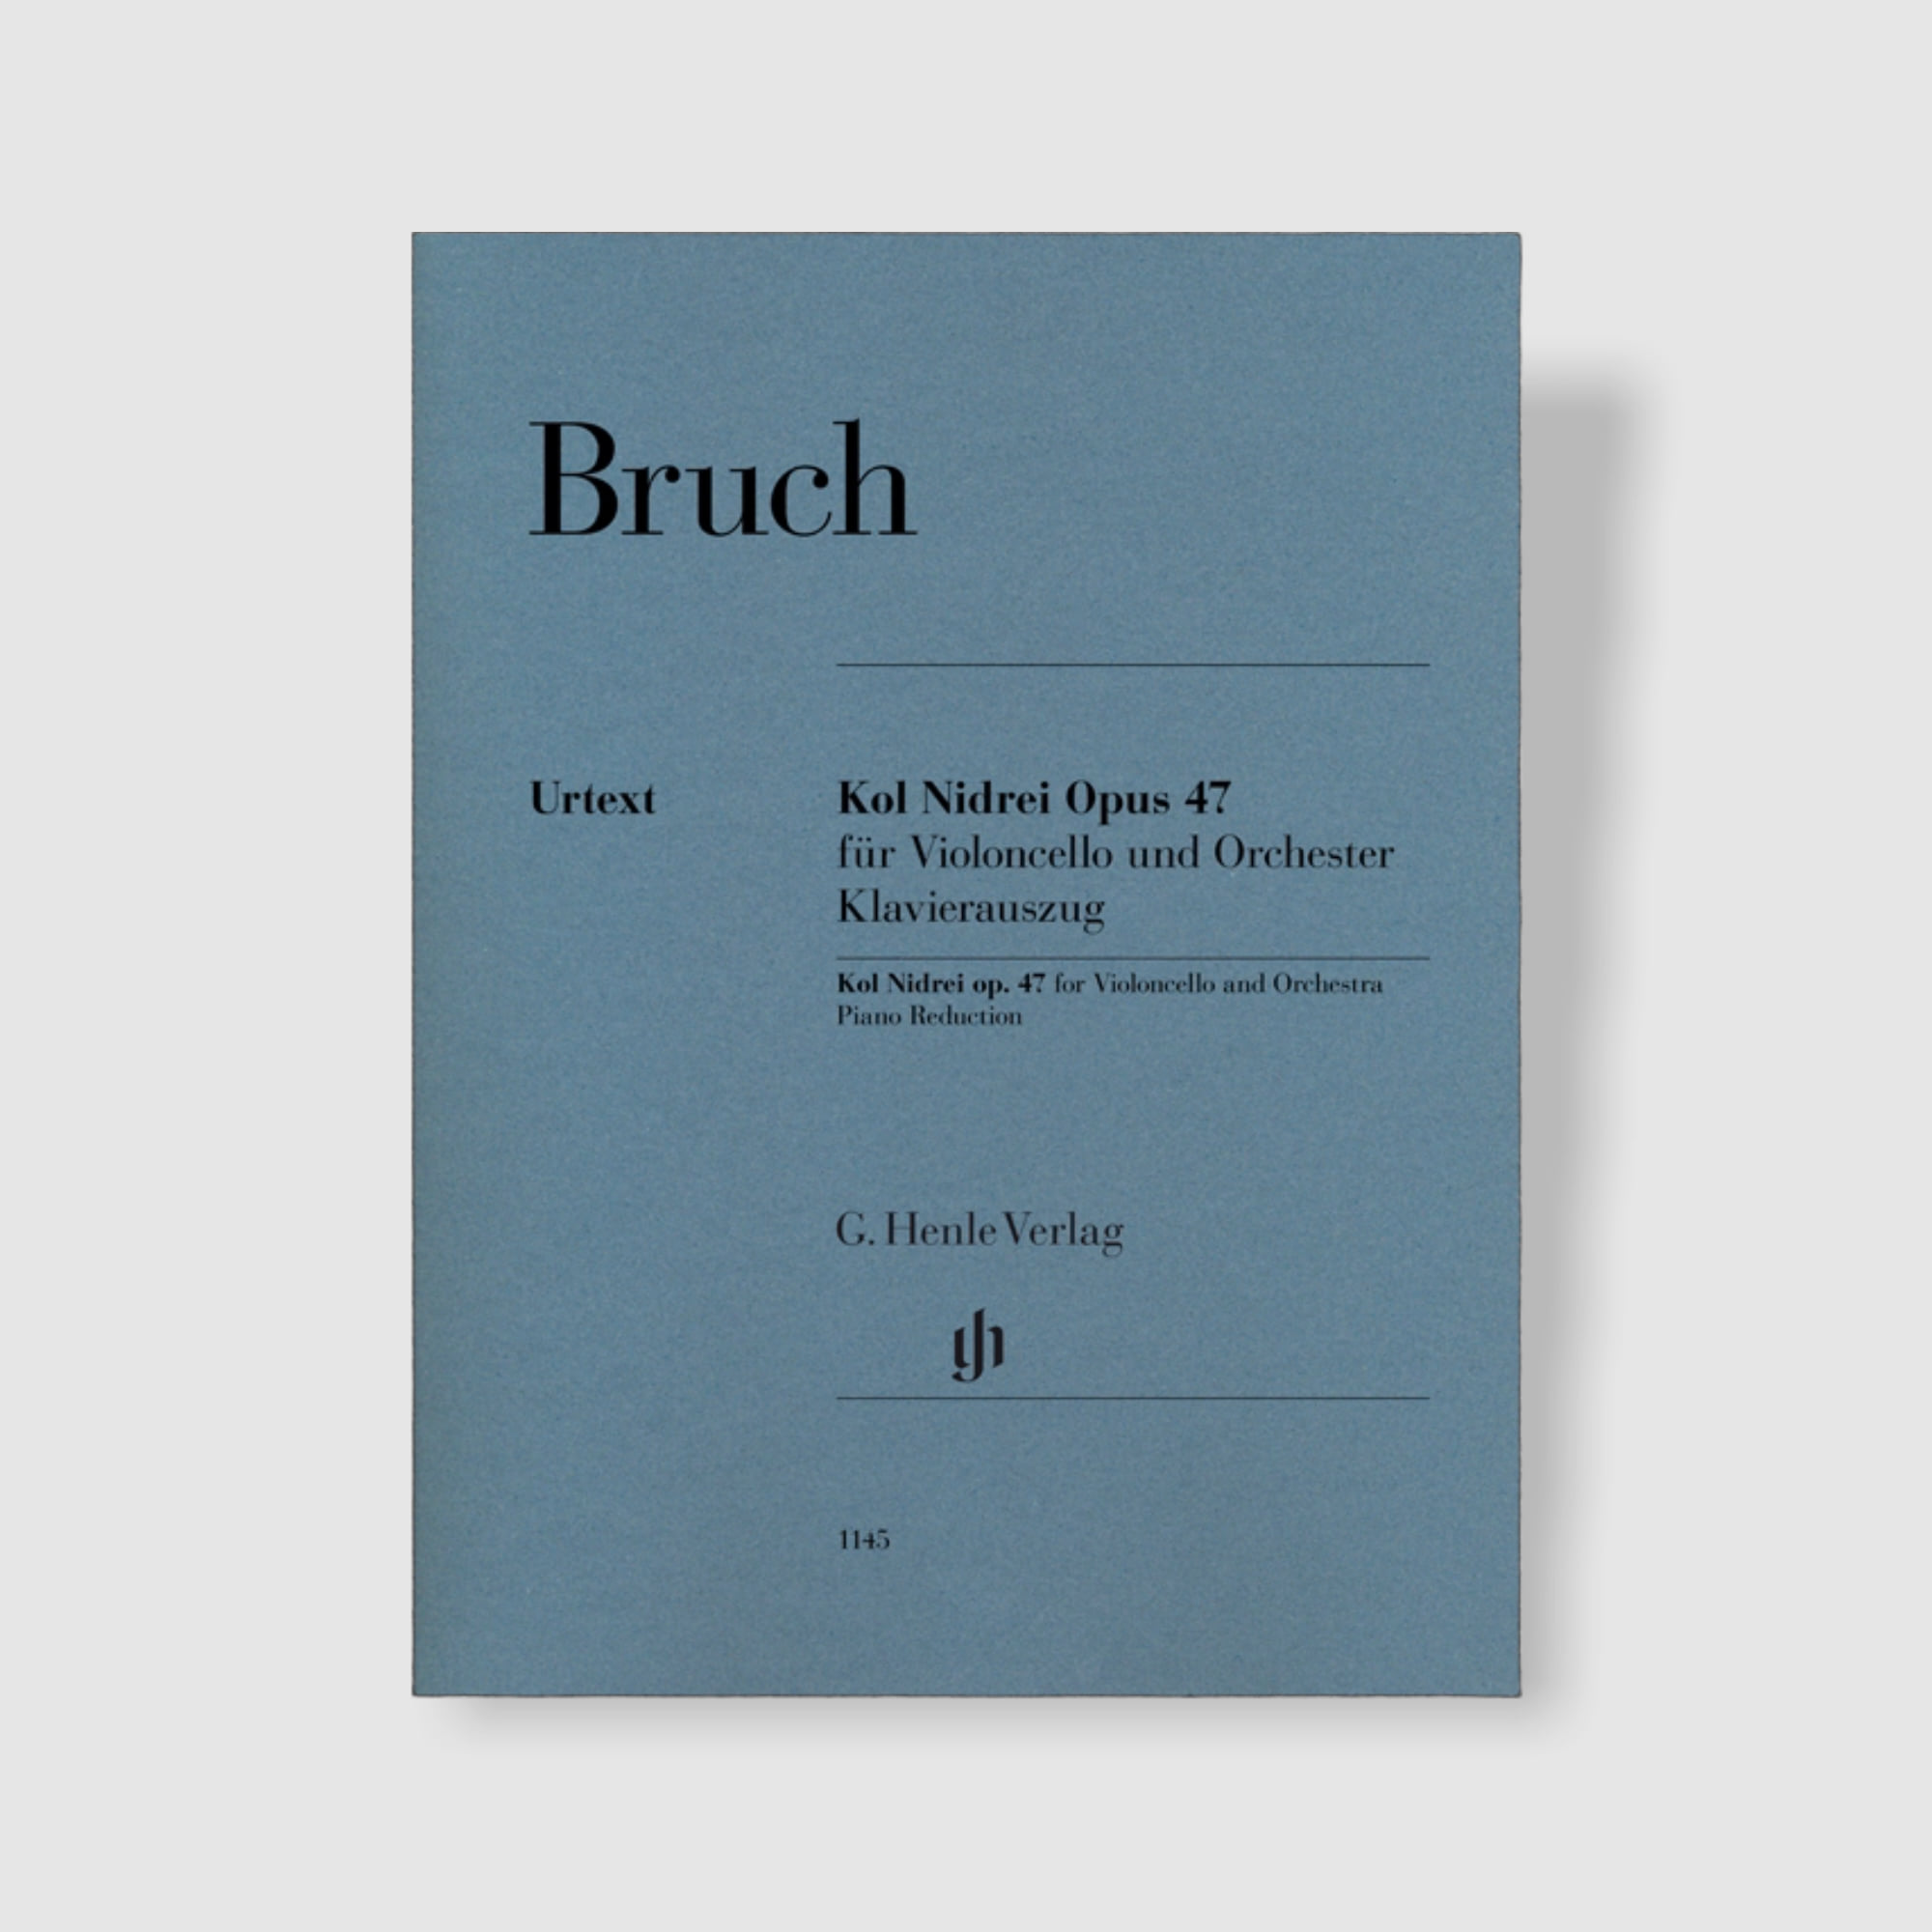 부르흐 첼로와 오케스트라를 위한 콜 니드라이 Op. 47